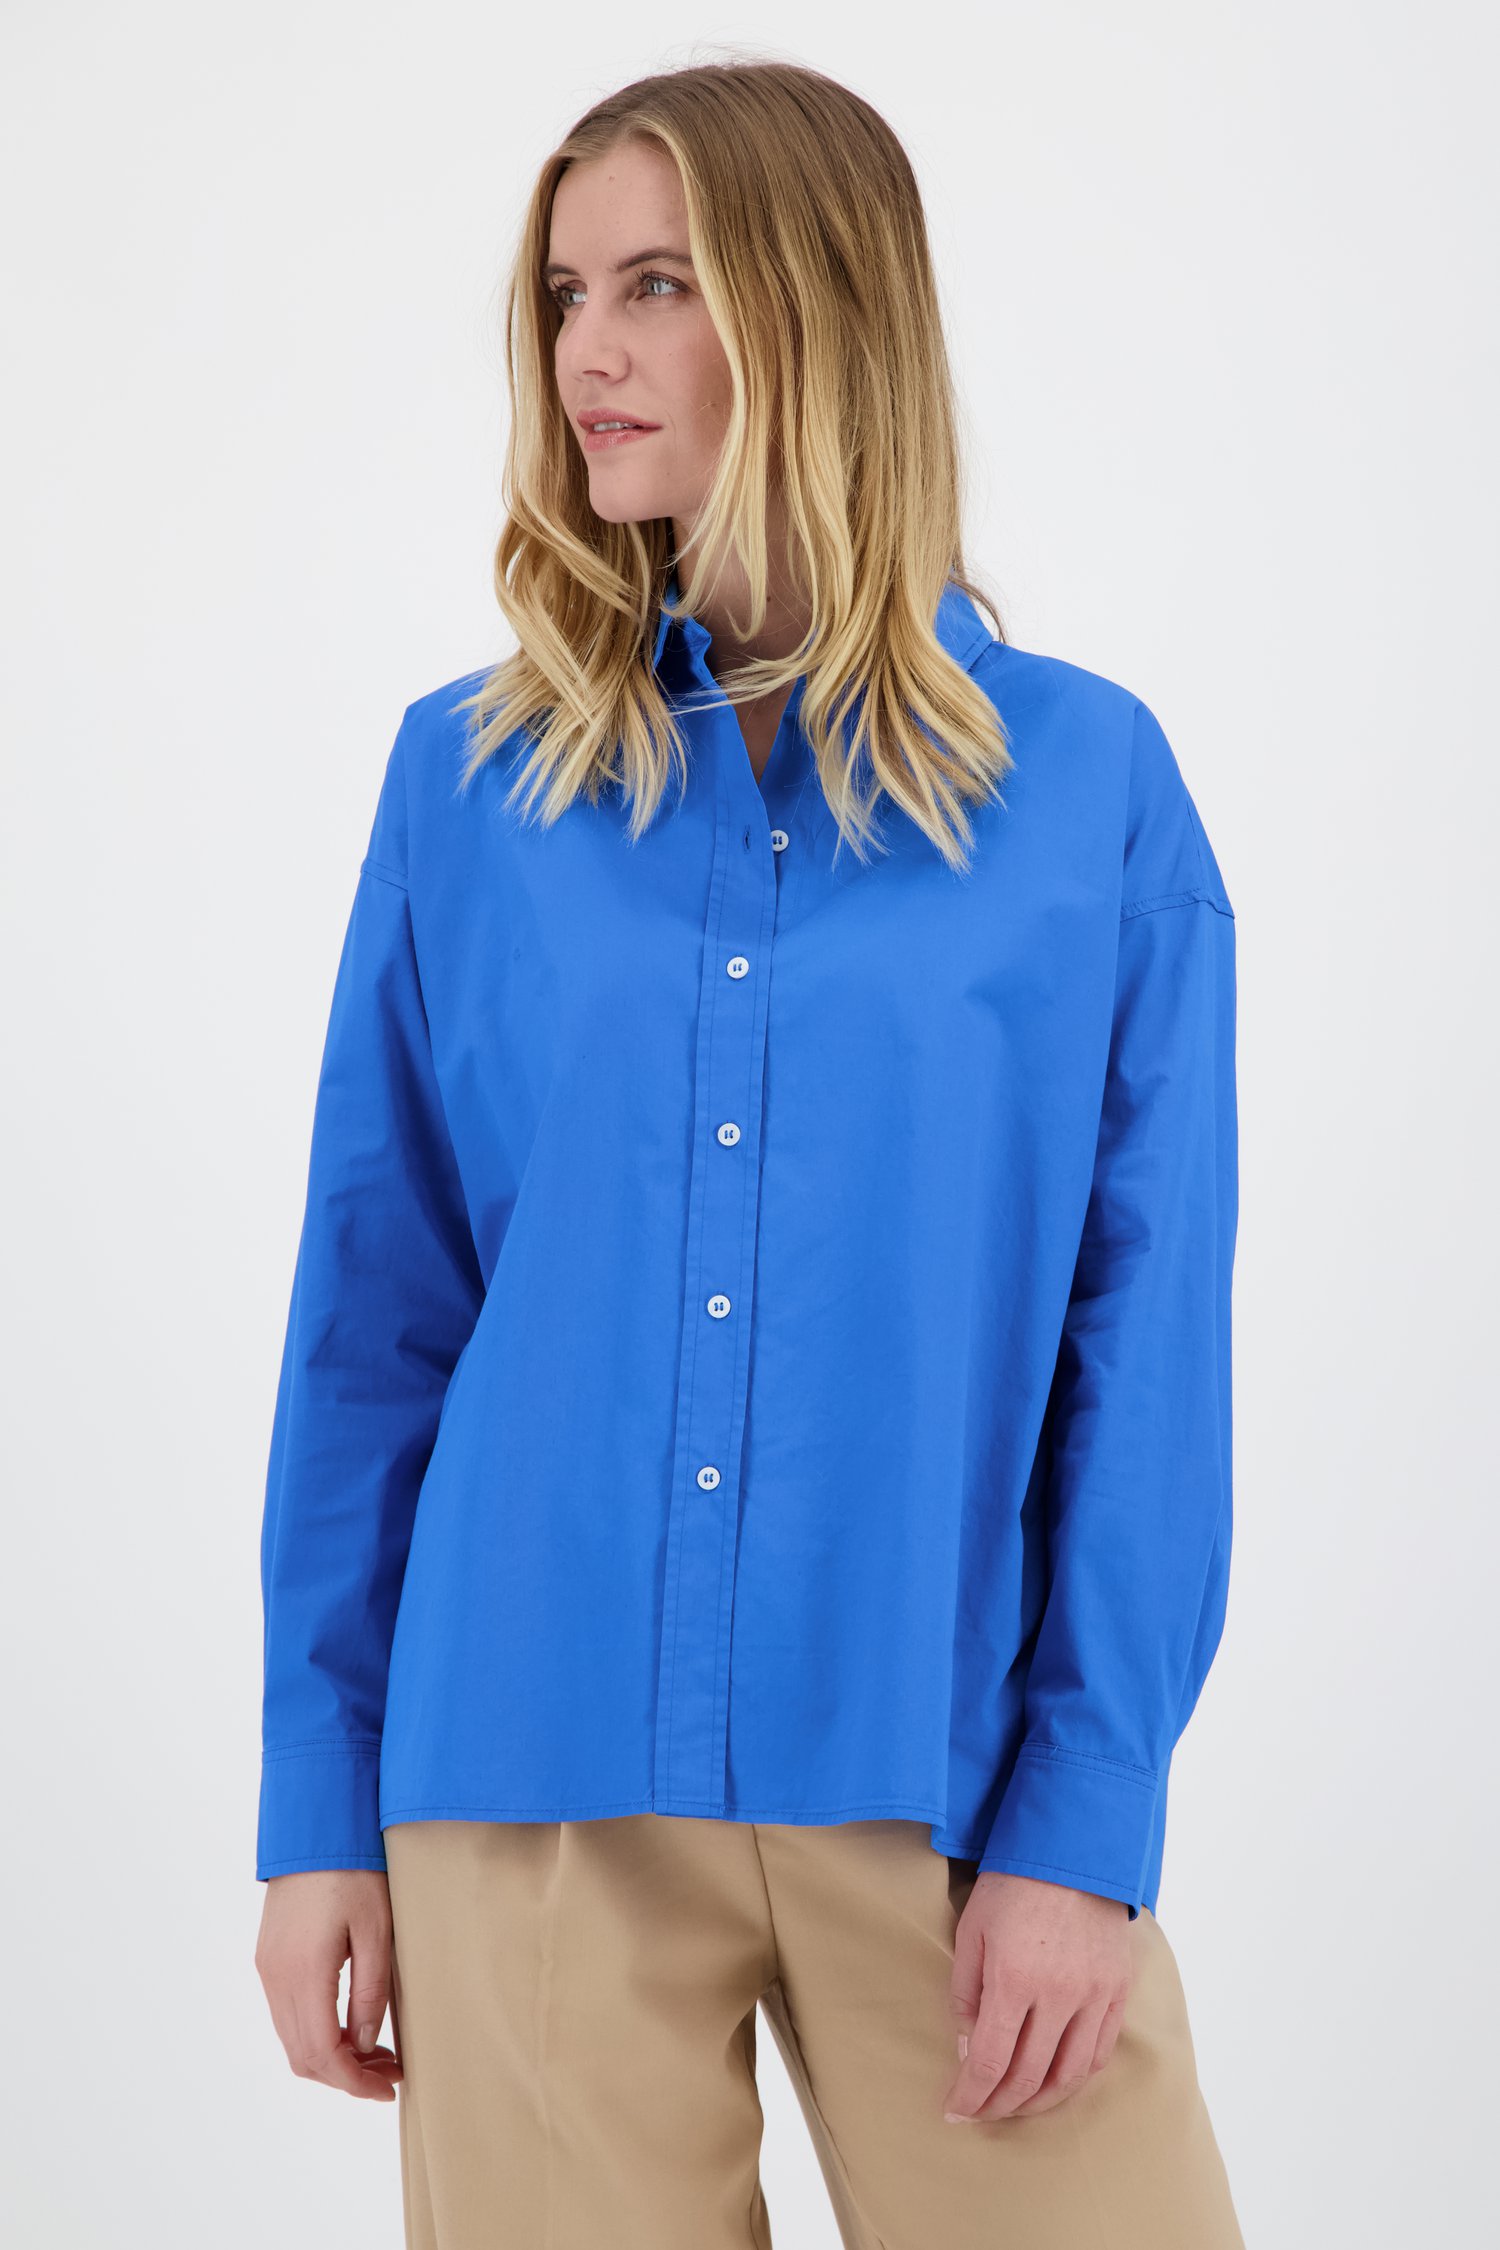 Blauwe blouse met losse fit van Opus 9819935 | e5